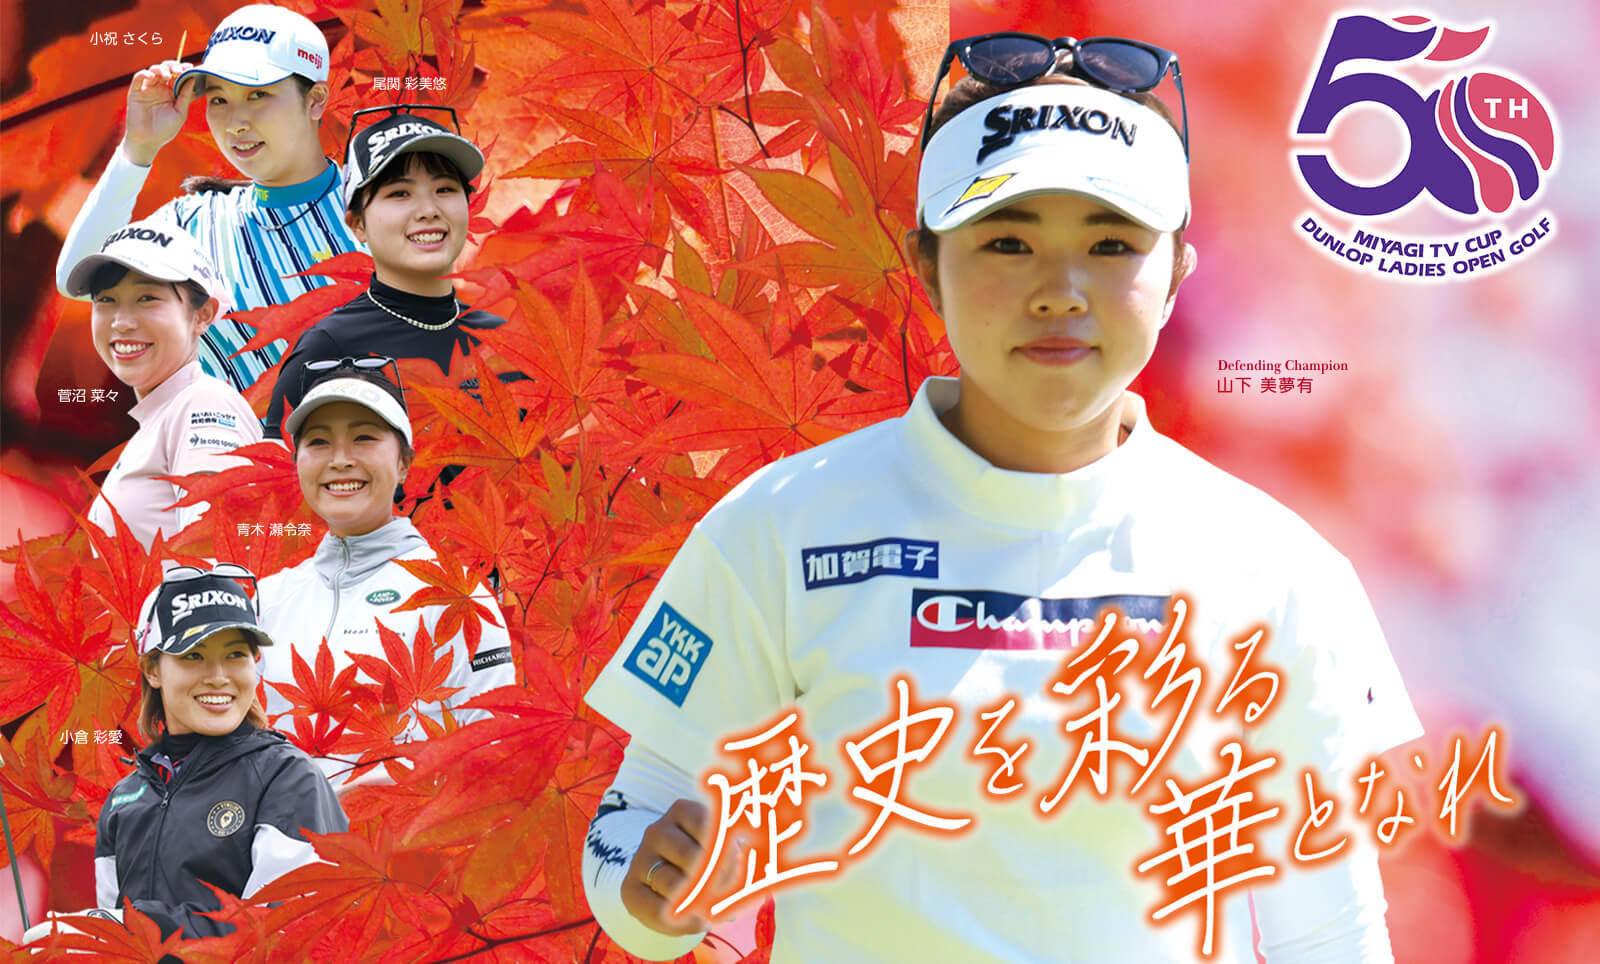 『第50回ミヤギテレビ杯ダンロップ女子オープンゴルフトーナメント』は9月22日に開幕